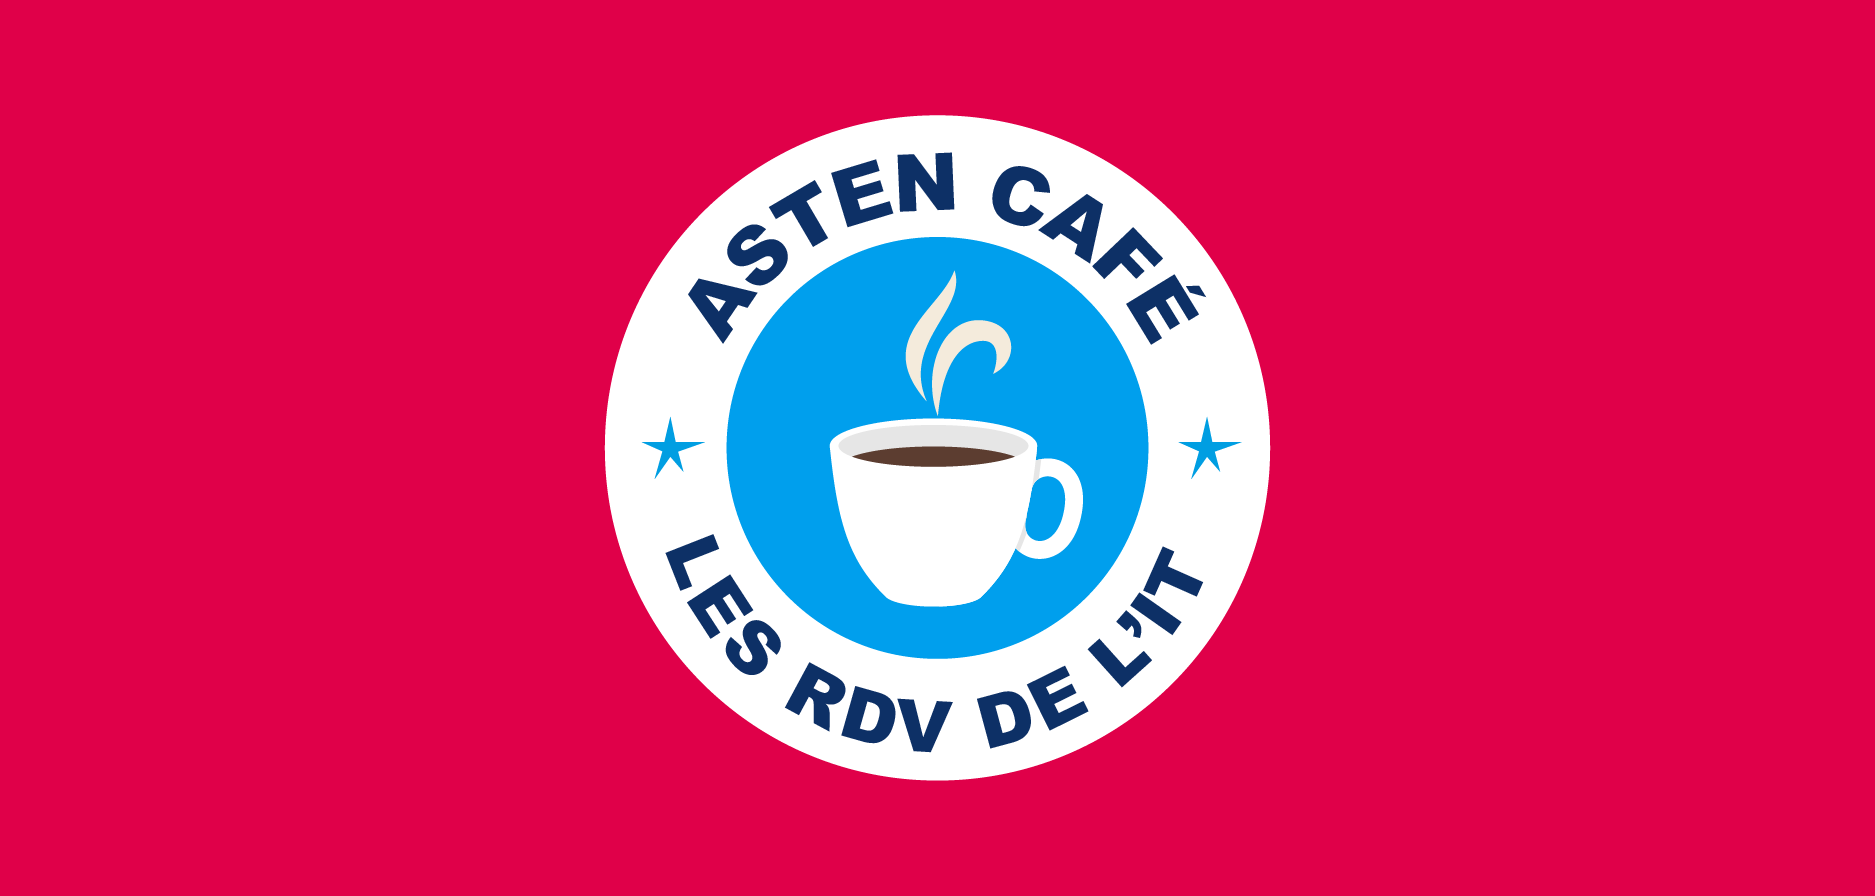 Asten café